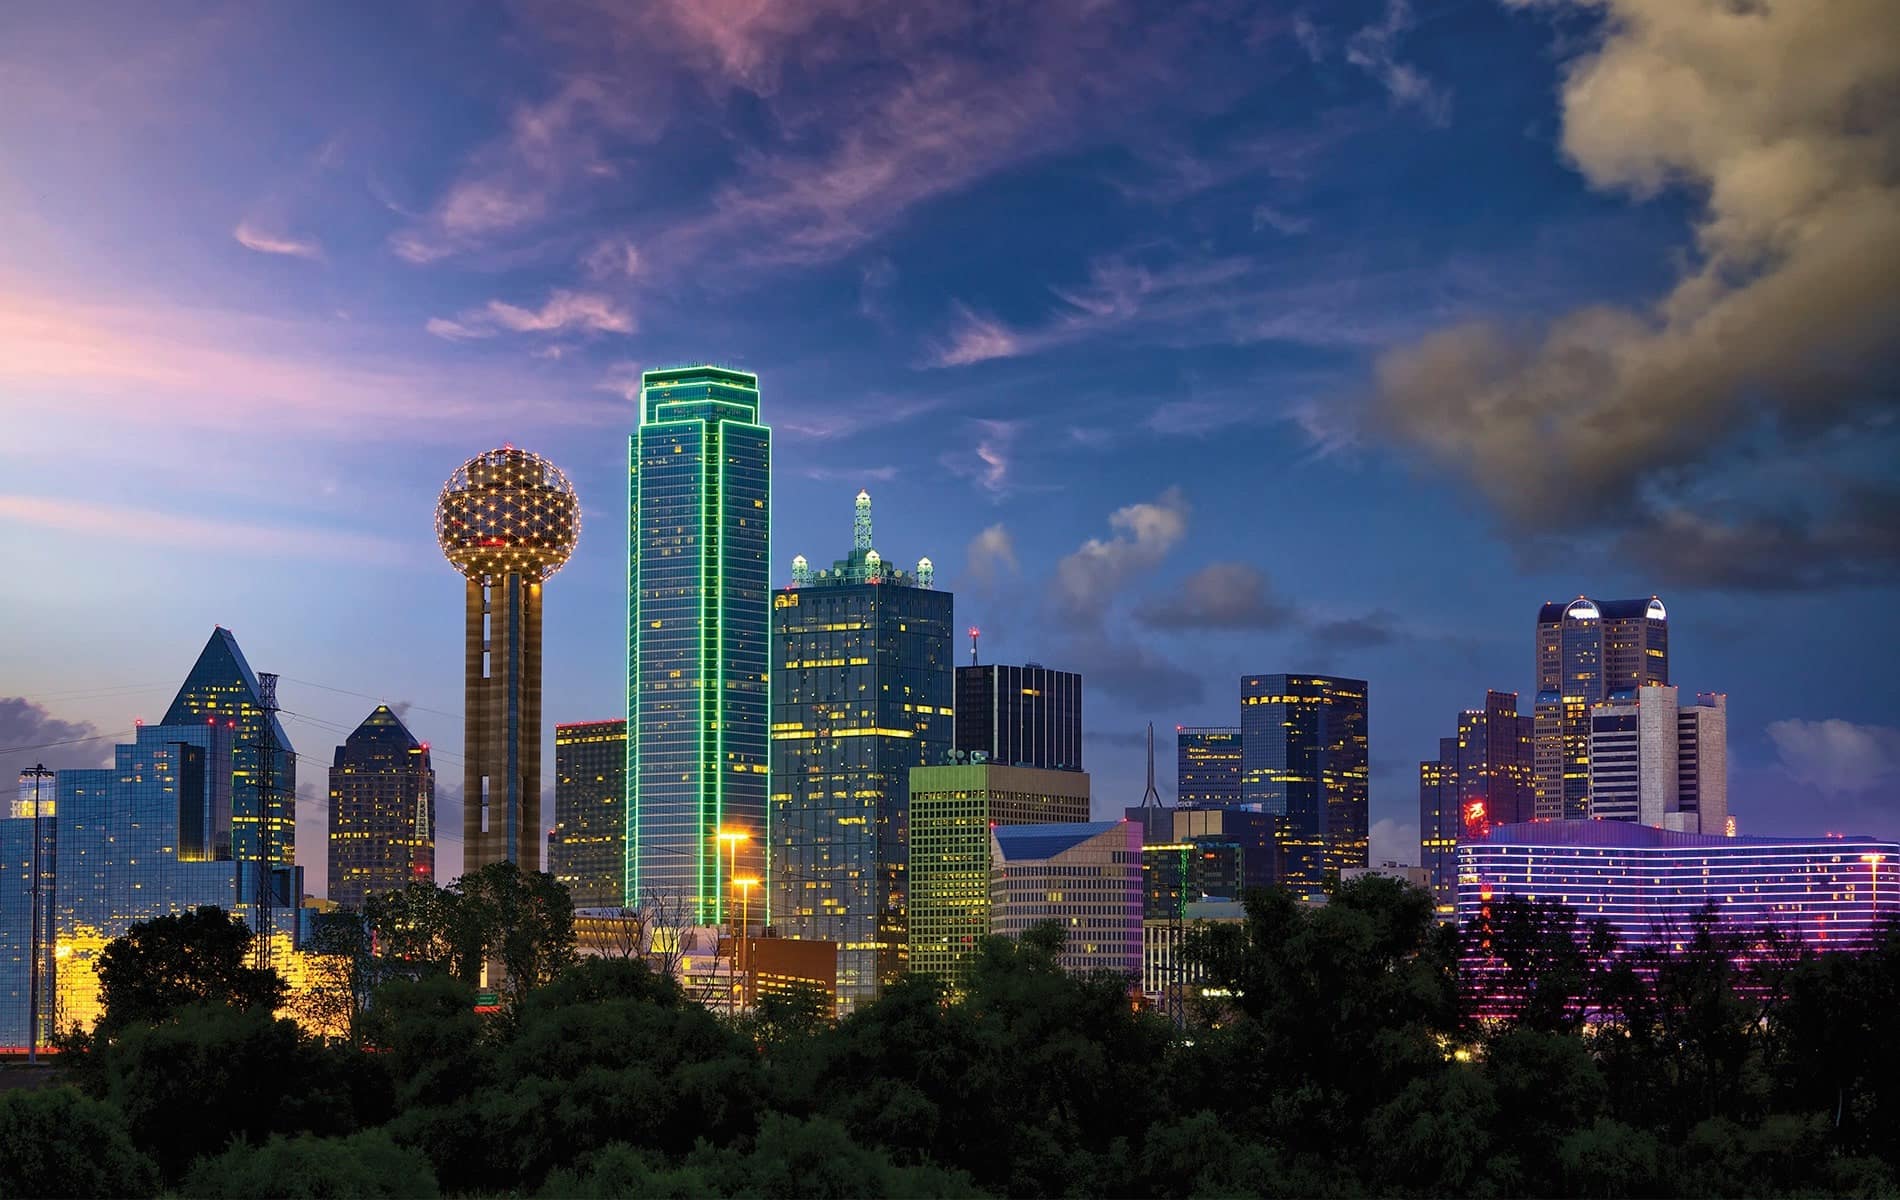 The Dallas skyline at dusk